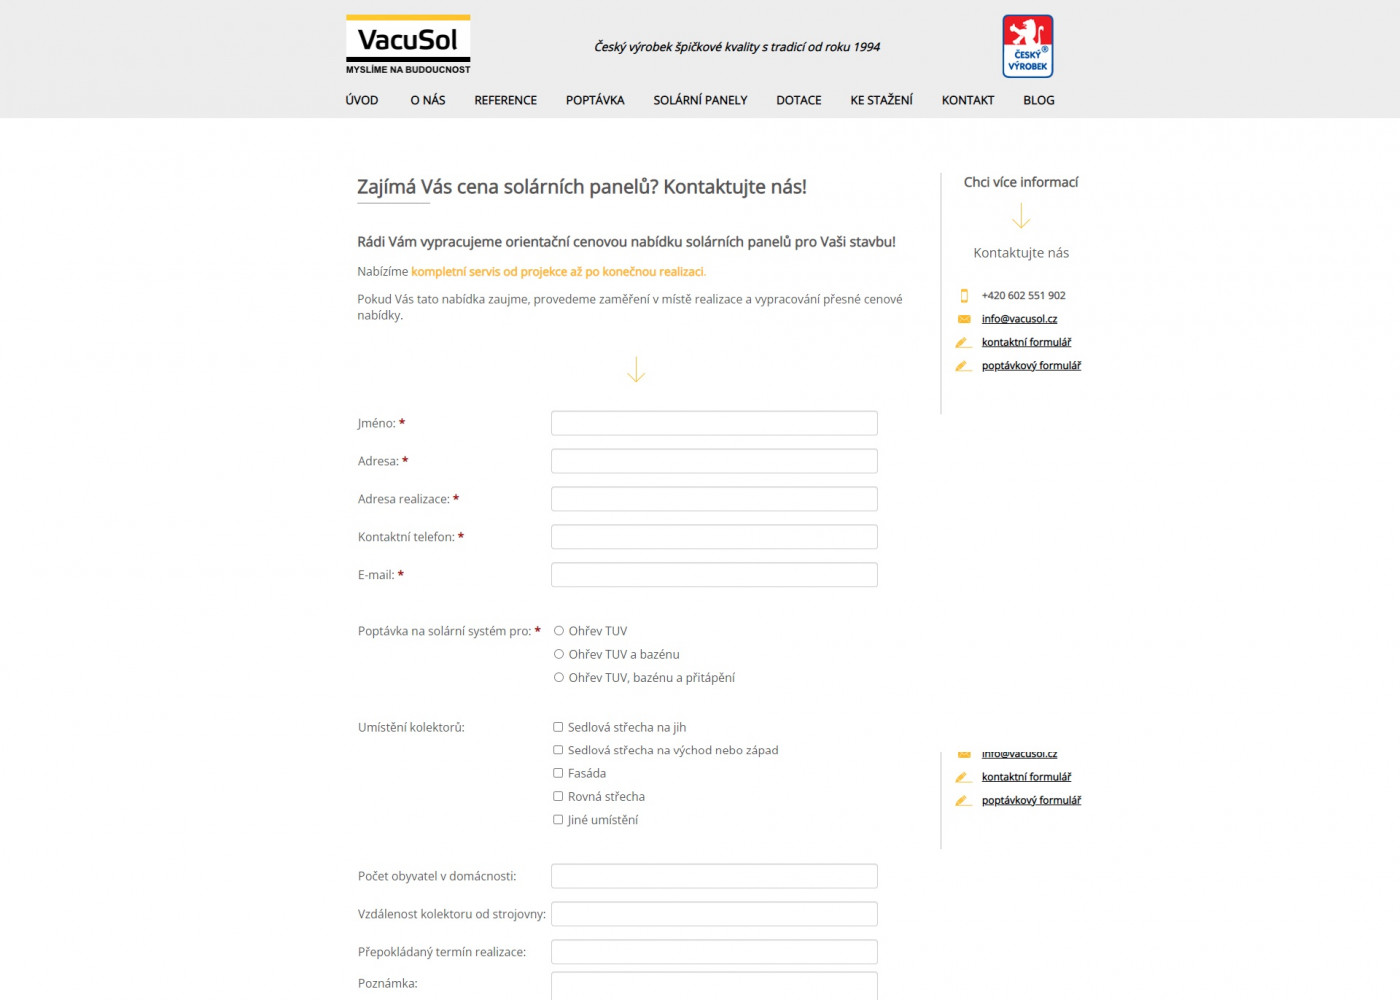 Tvorba nového webu pro VacuSol ve svérázném designu - Porovnání, stará verze #2